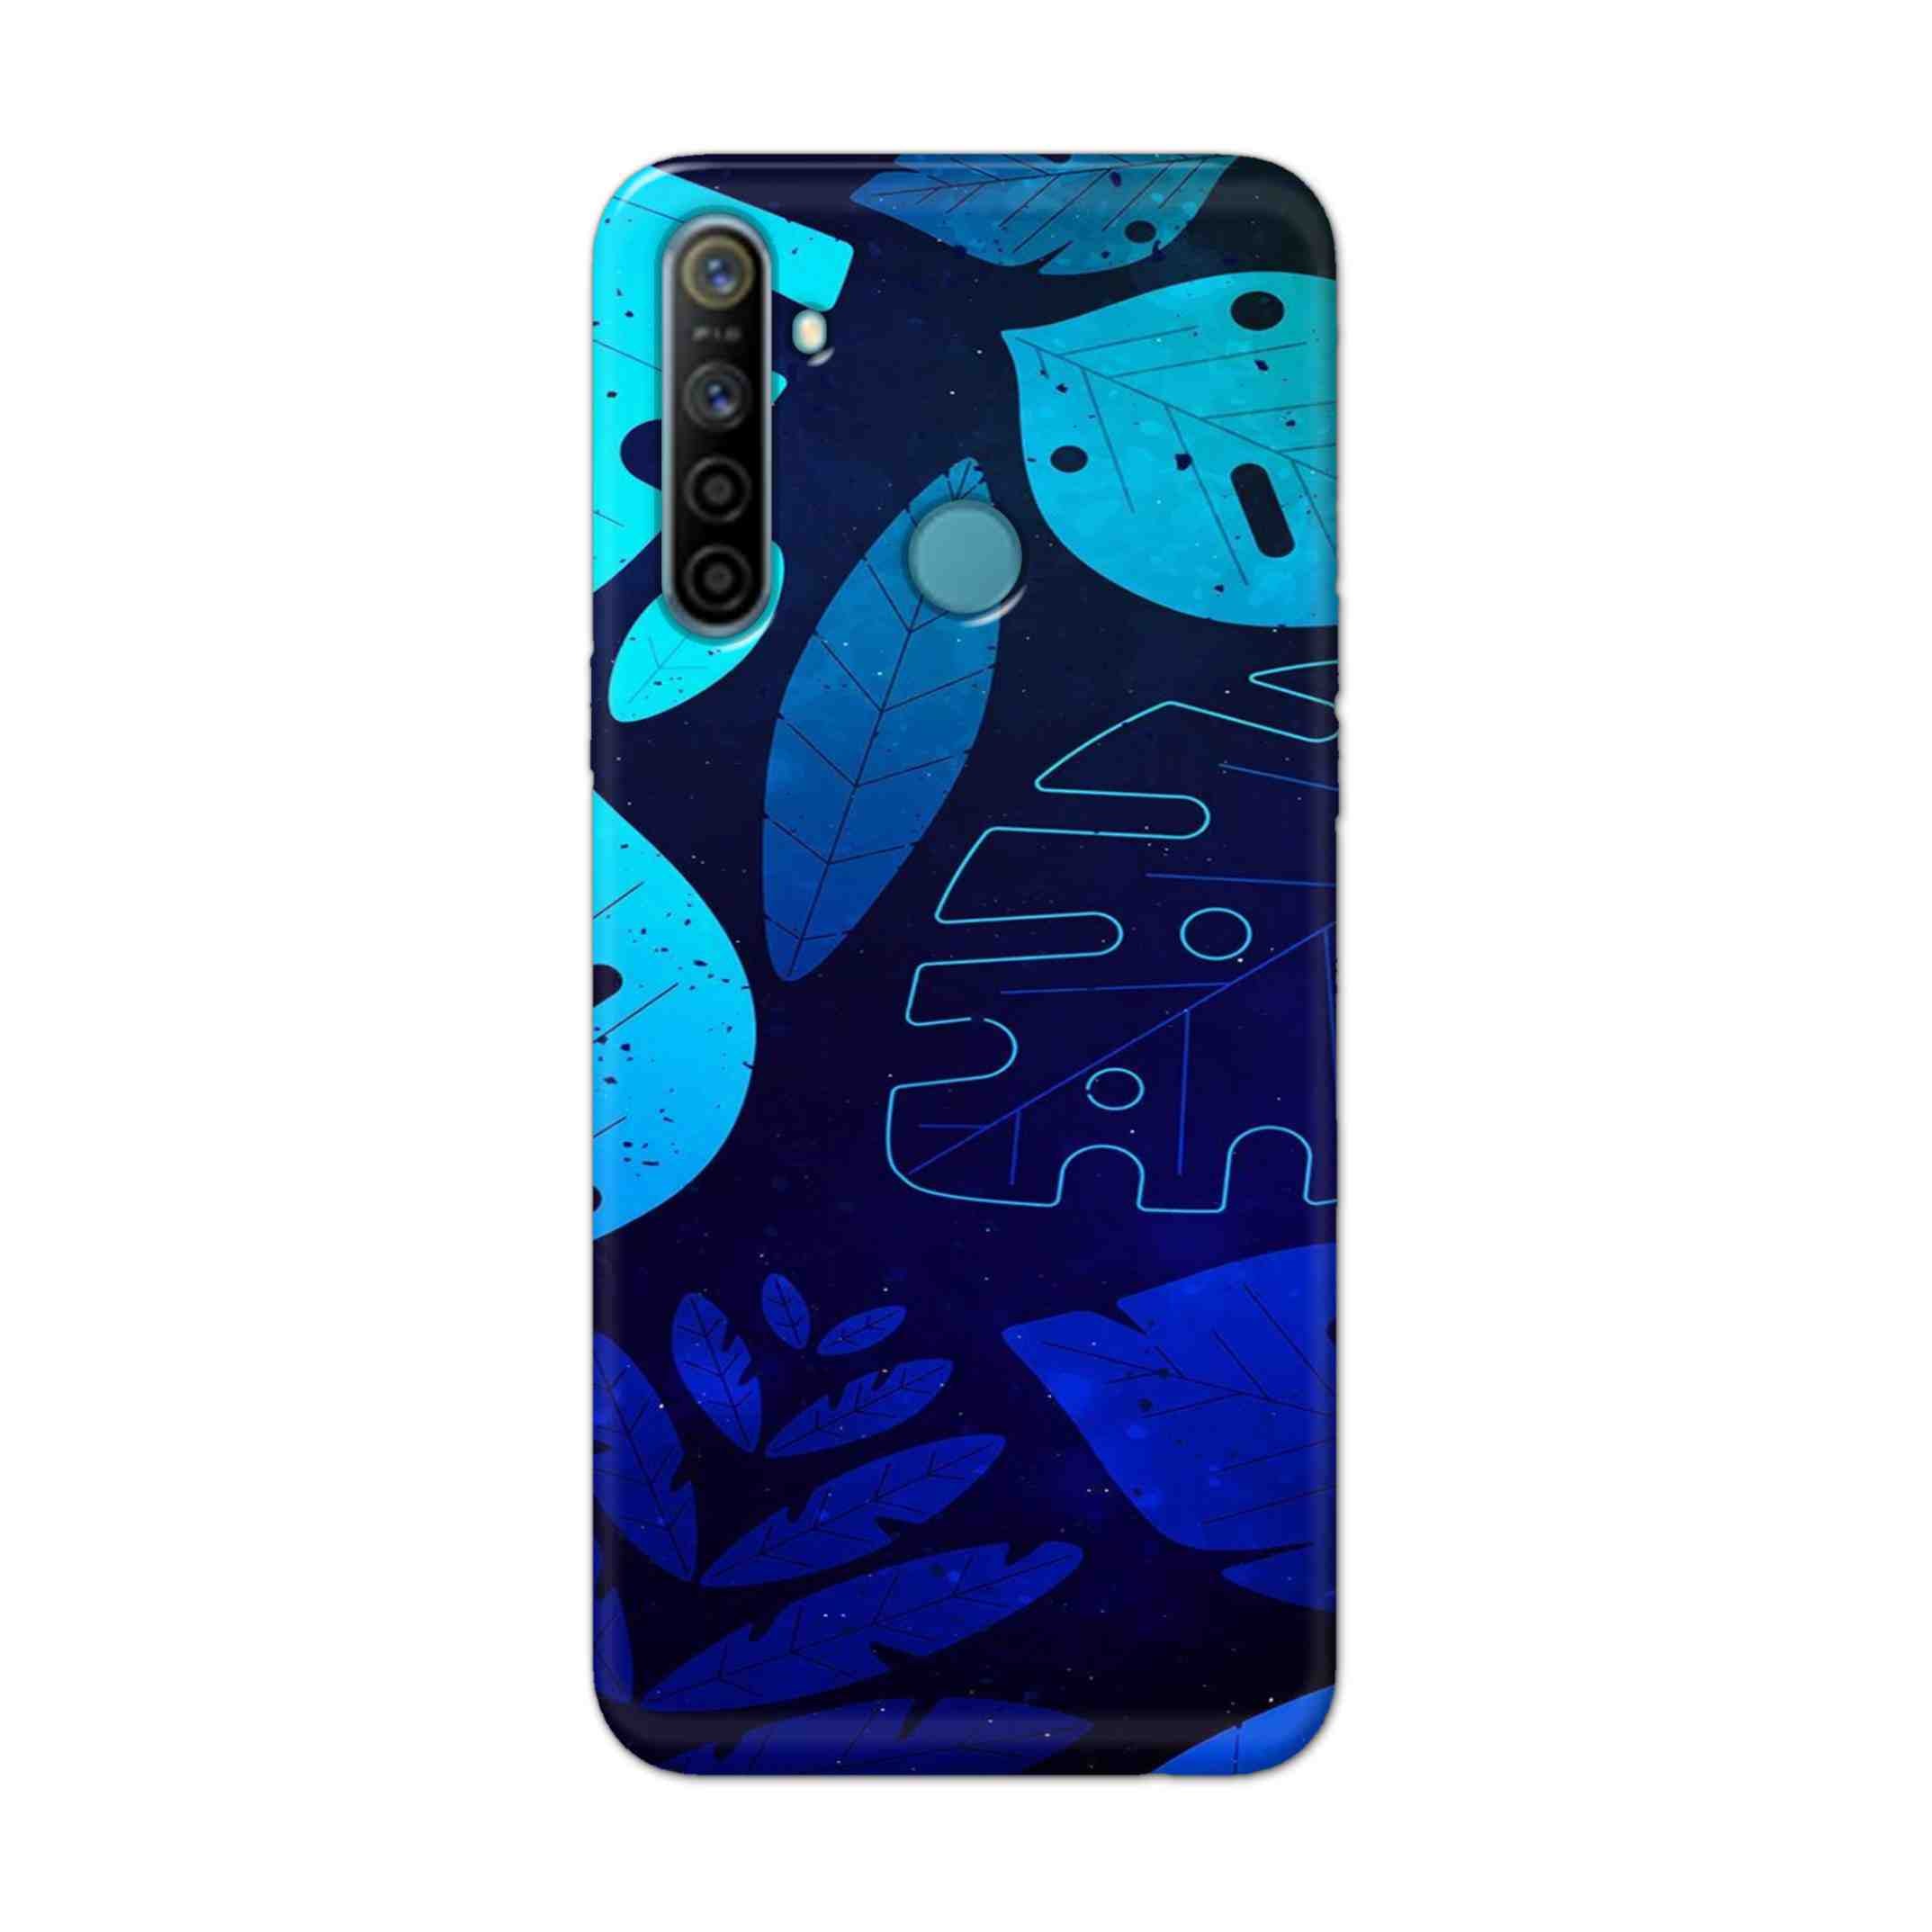 Buy Neon Leaf Hard Back Mobile Phone Case Cover For Realme 5i Online